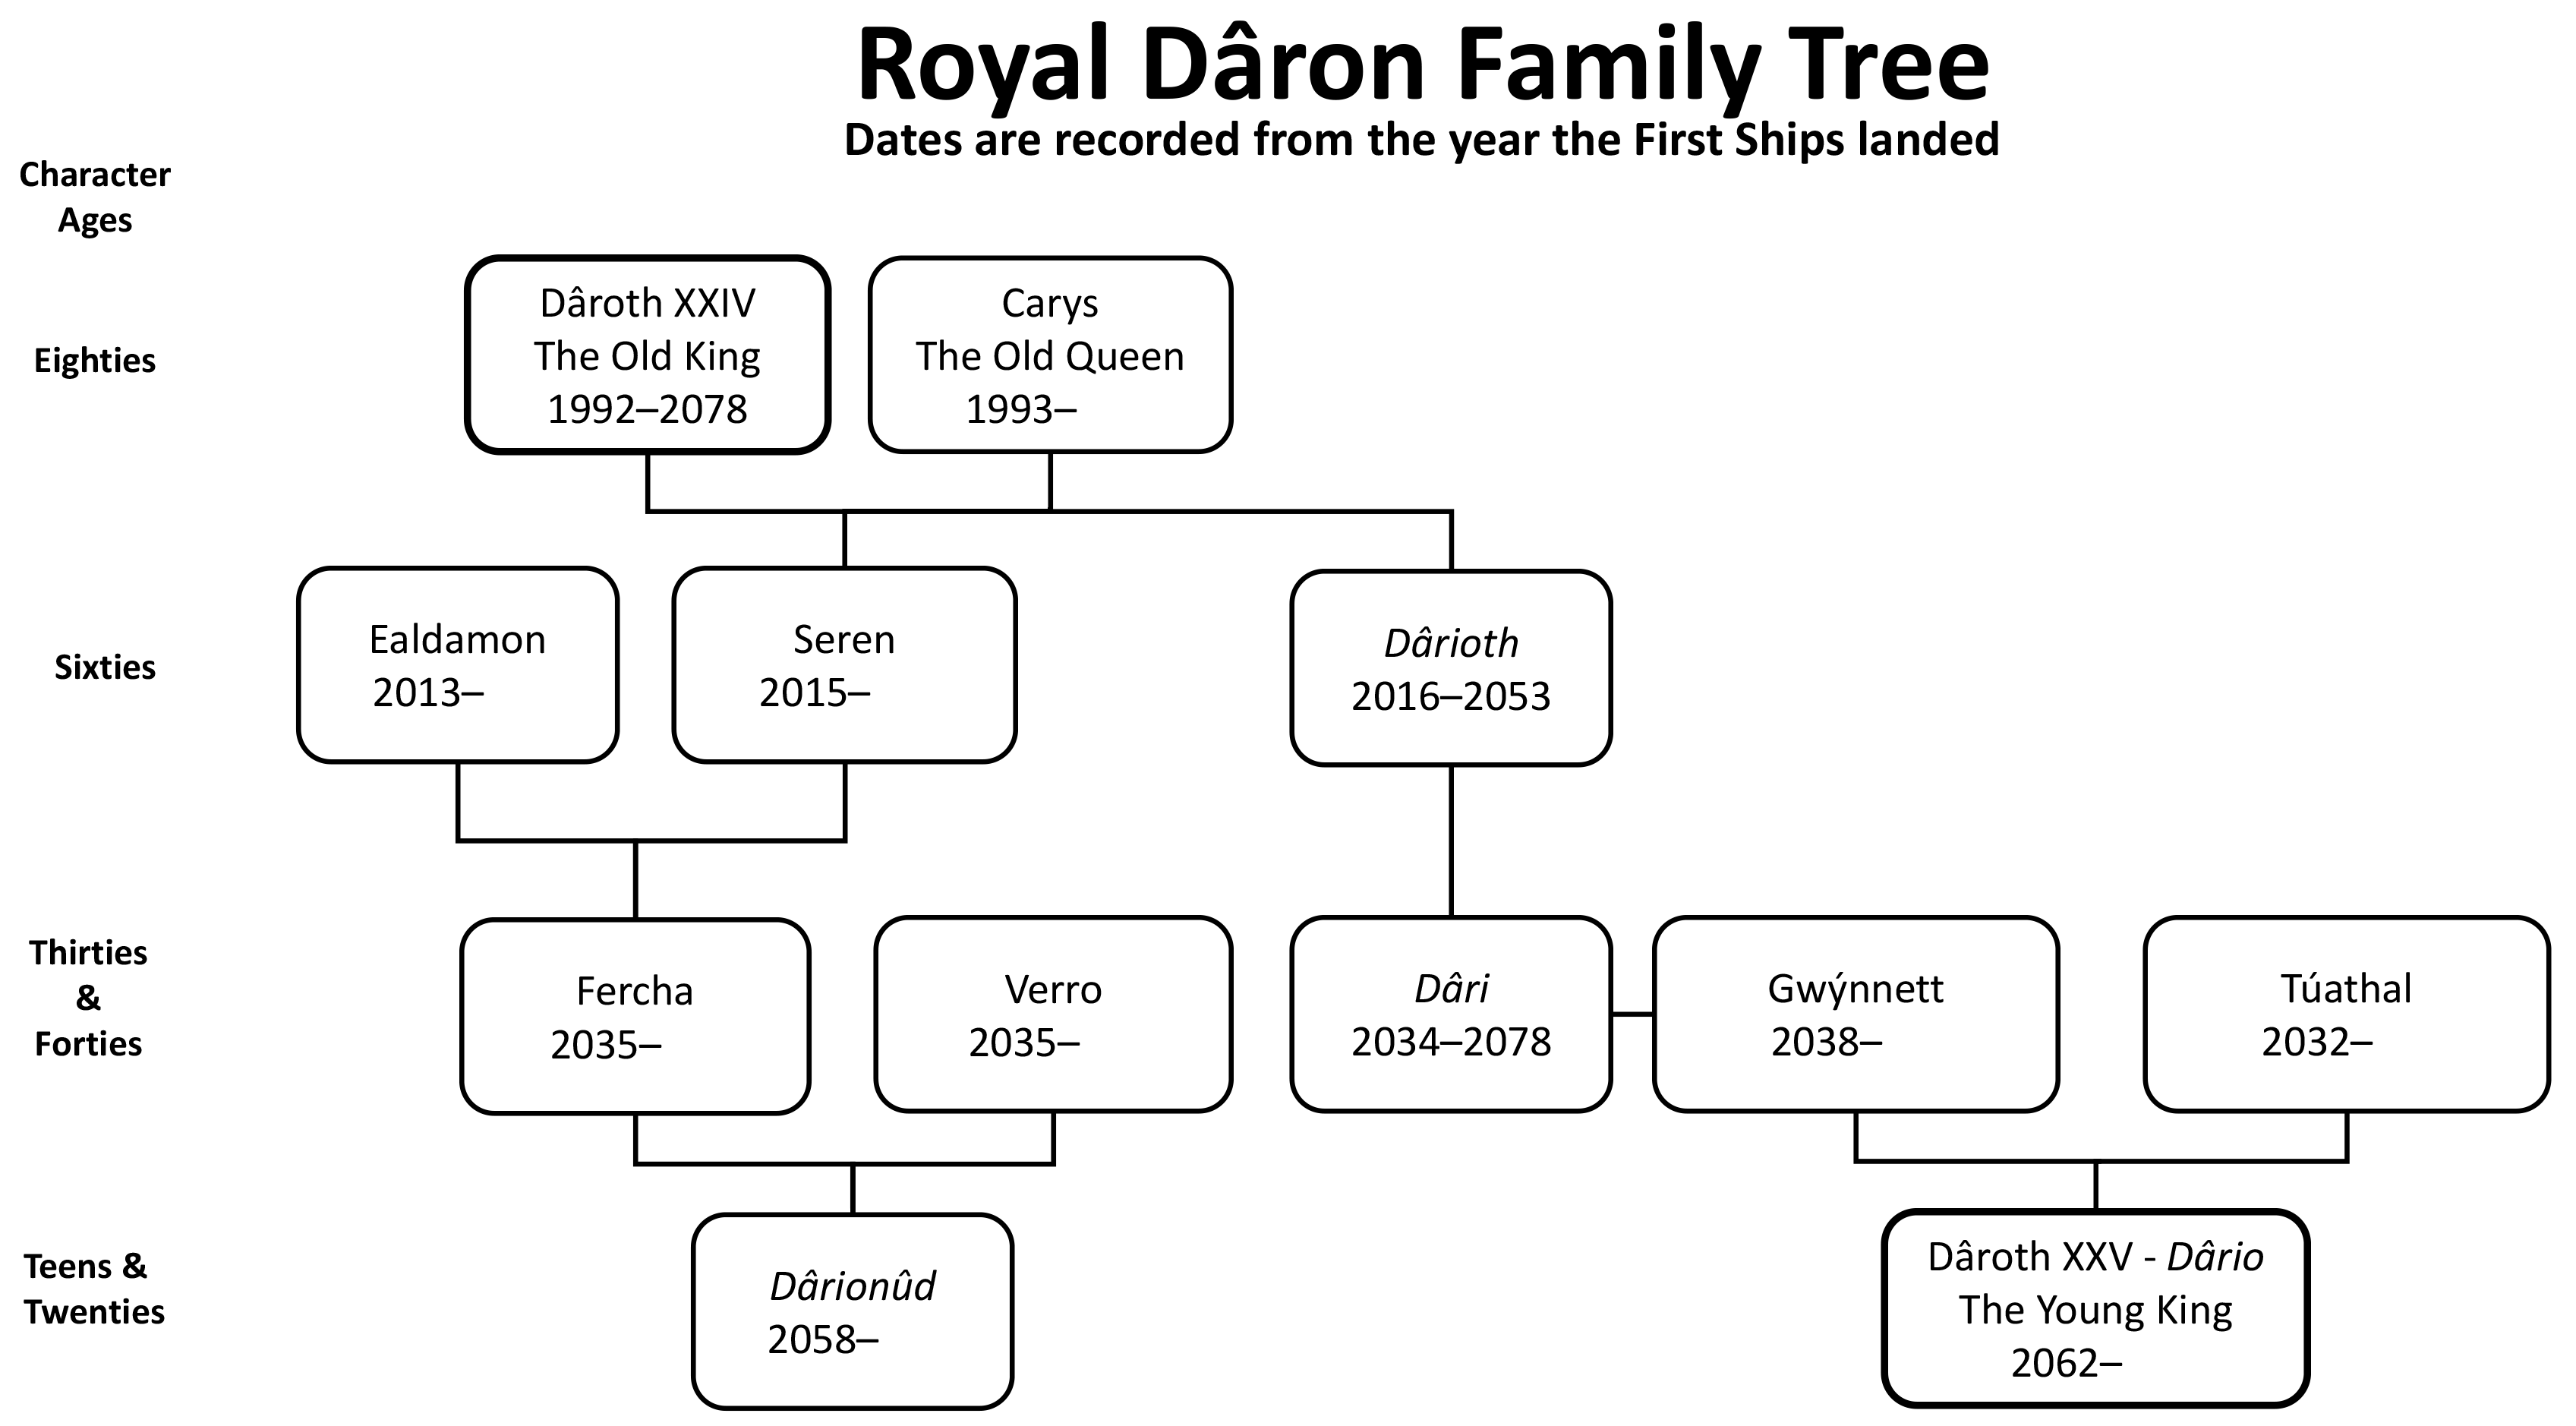 Royal Daron Family Tree